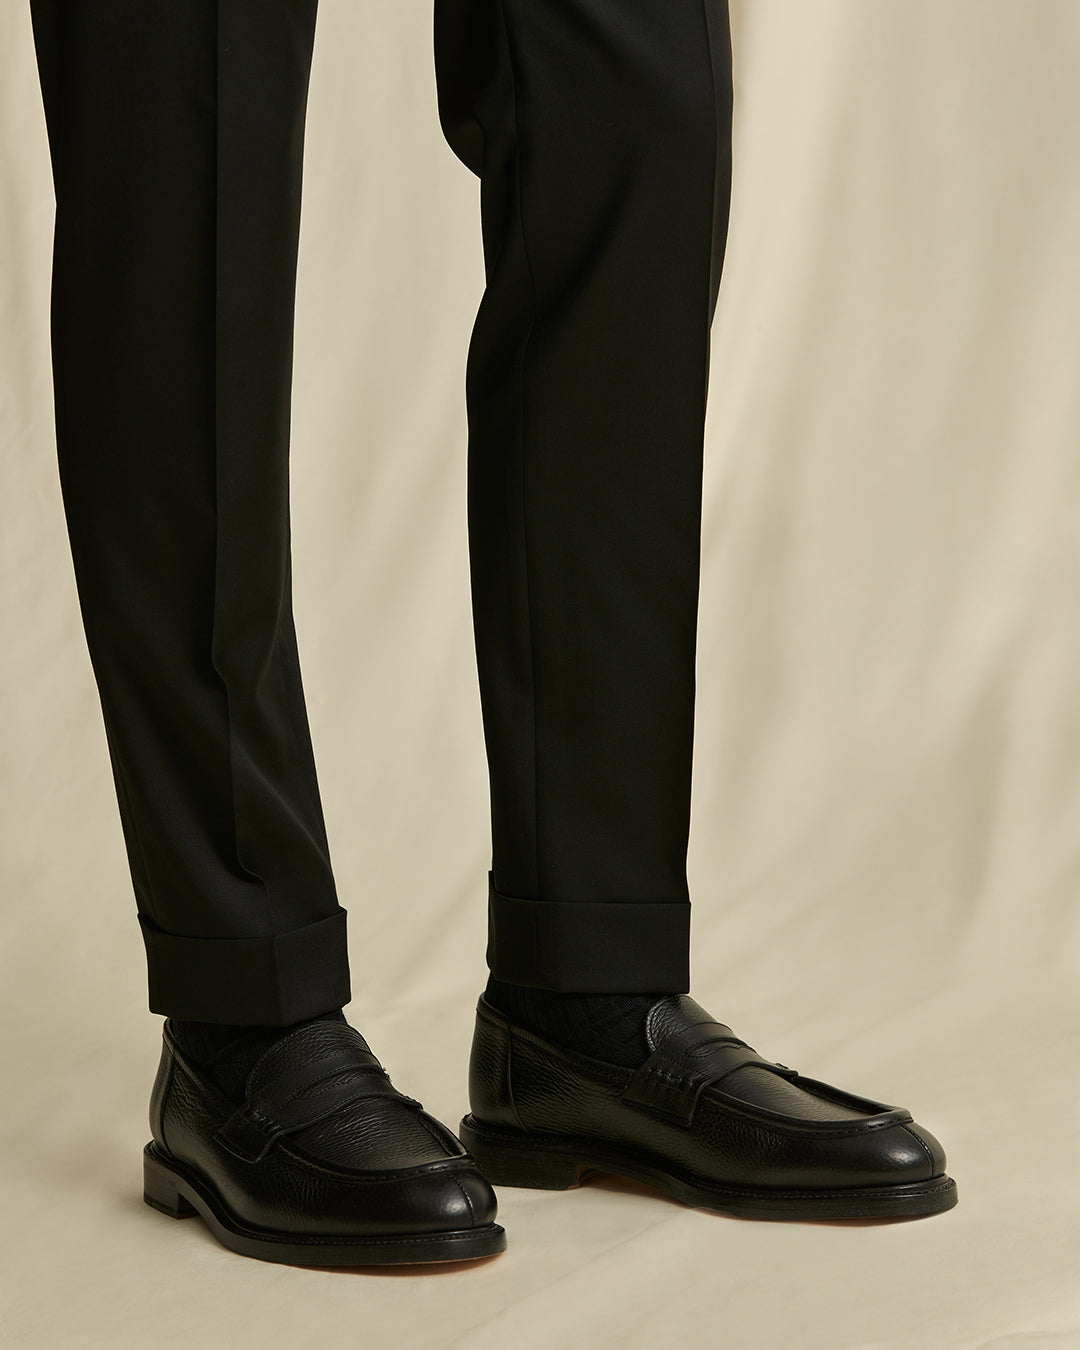 Morris Jack Prestige Suit Trouser